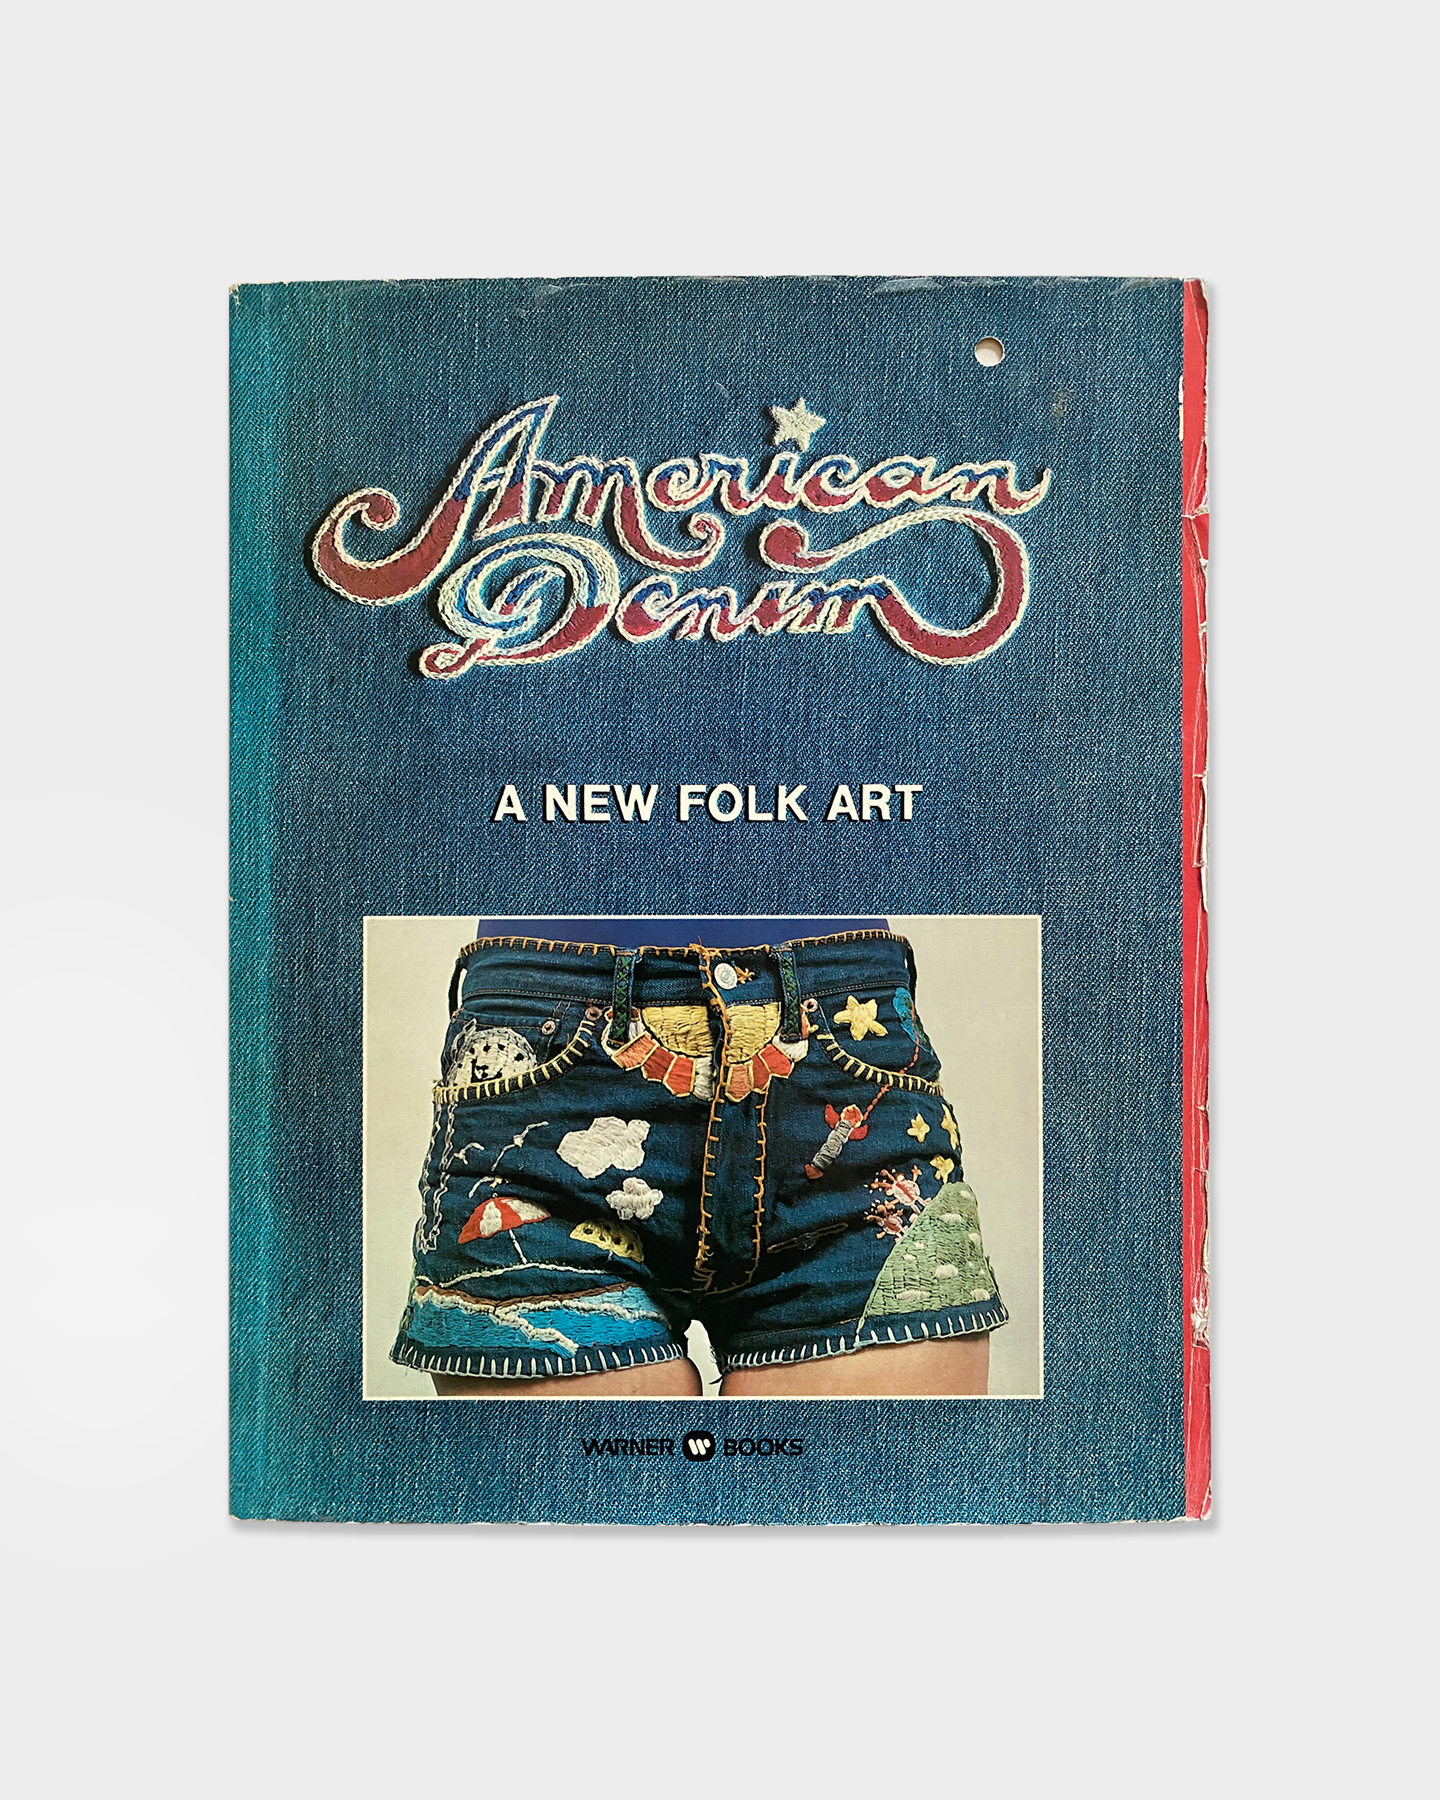 A New Folk Art (1975)